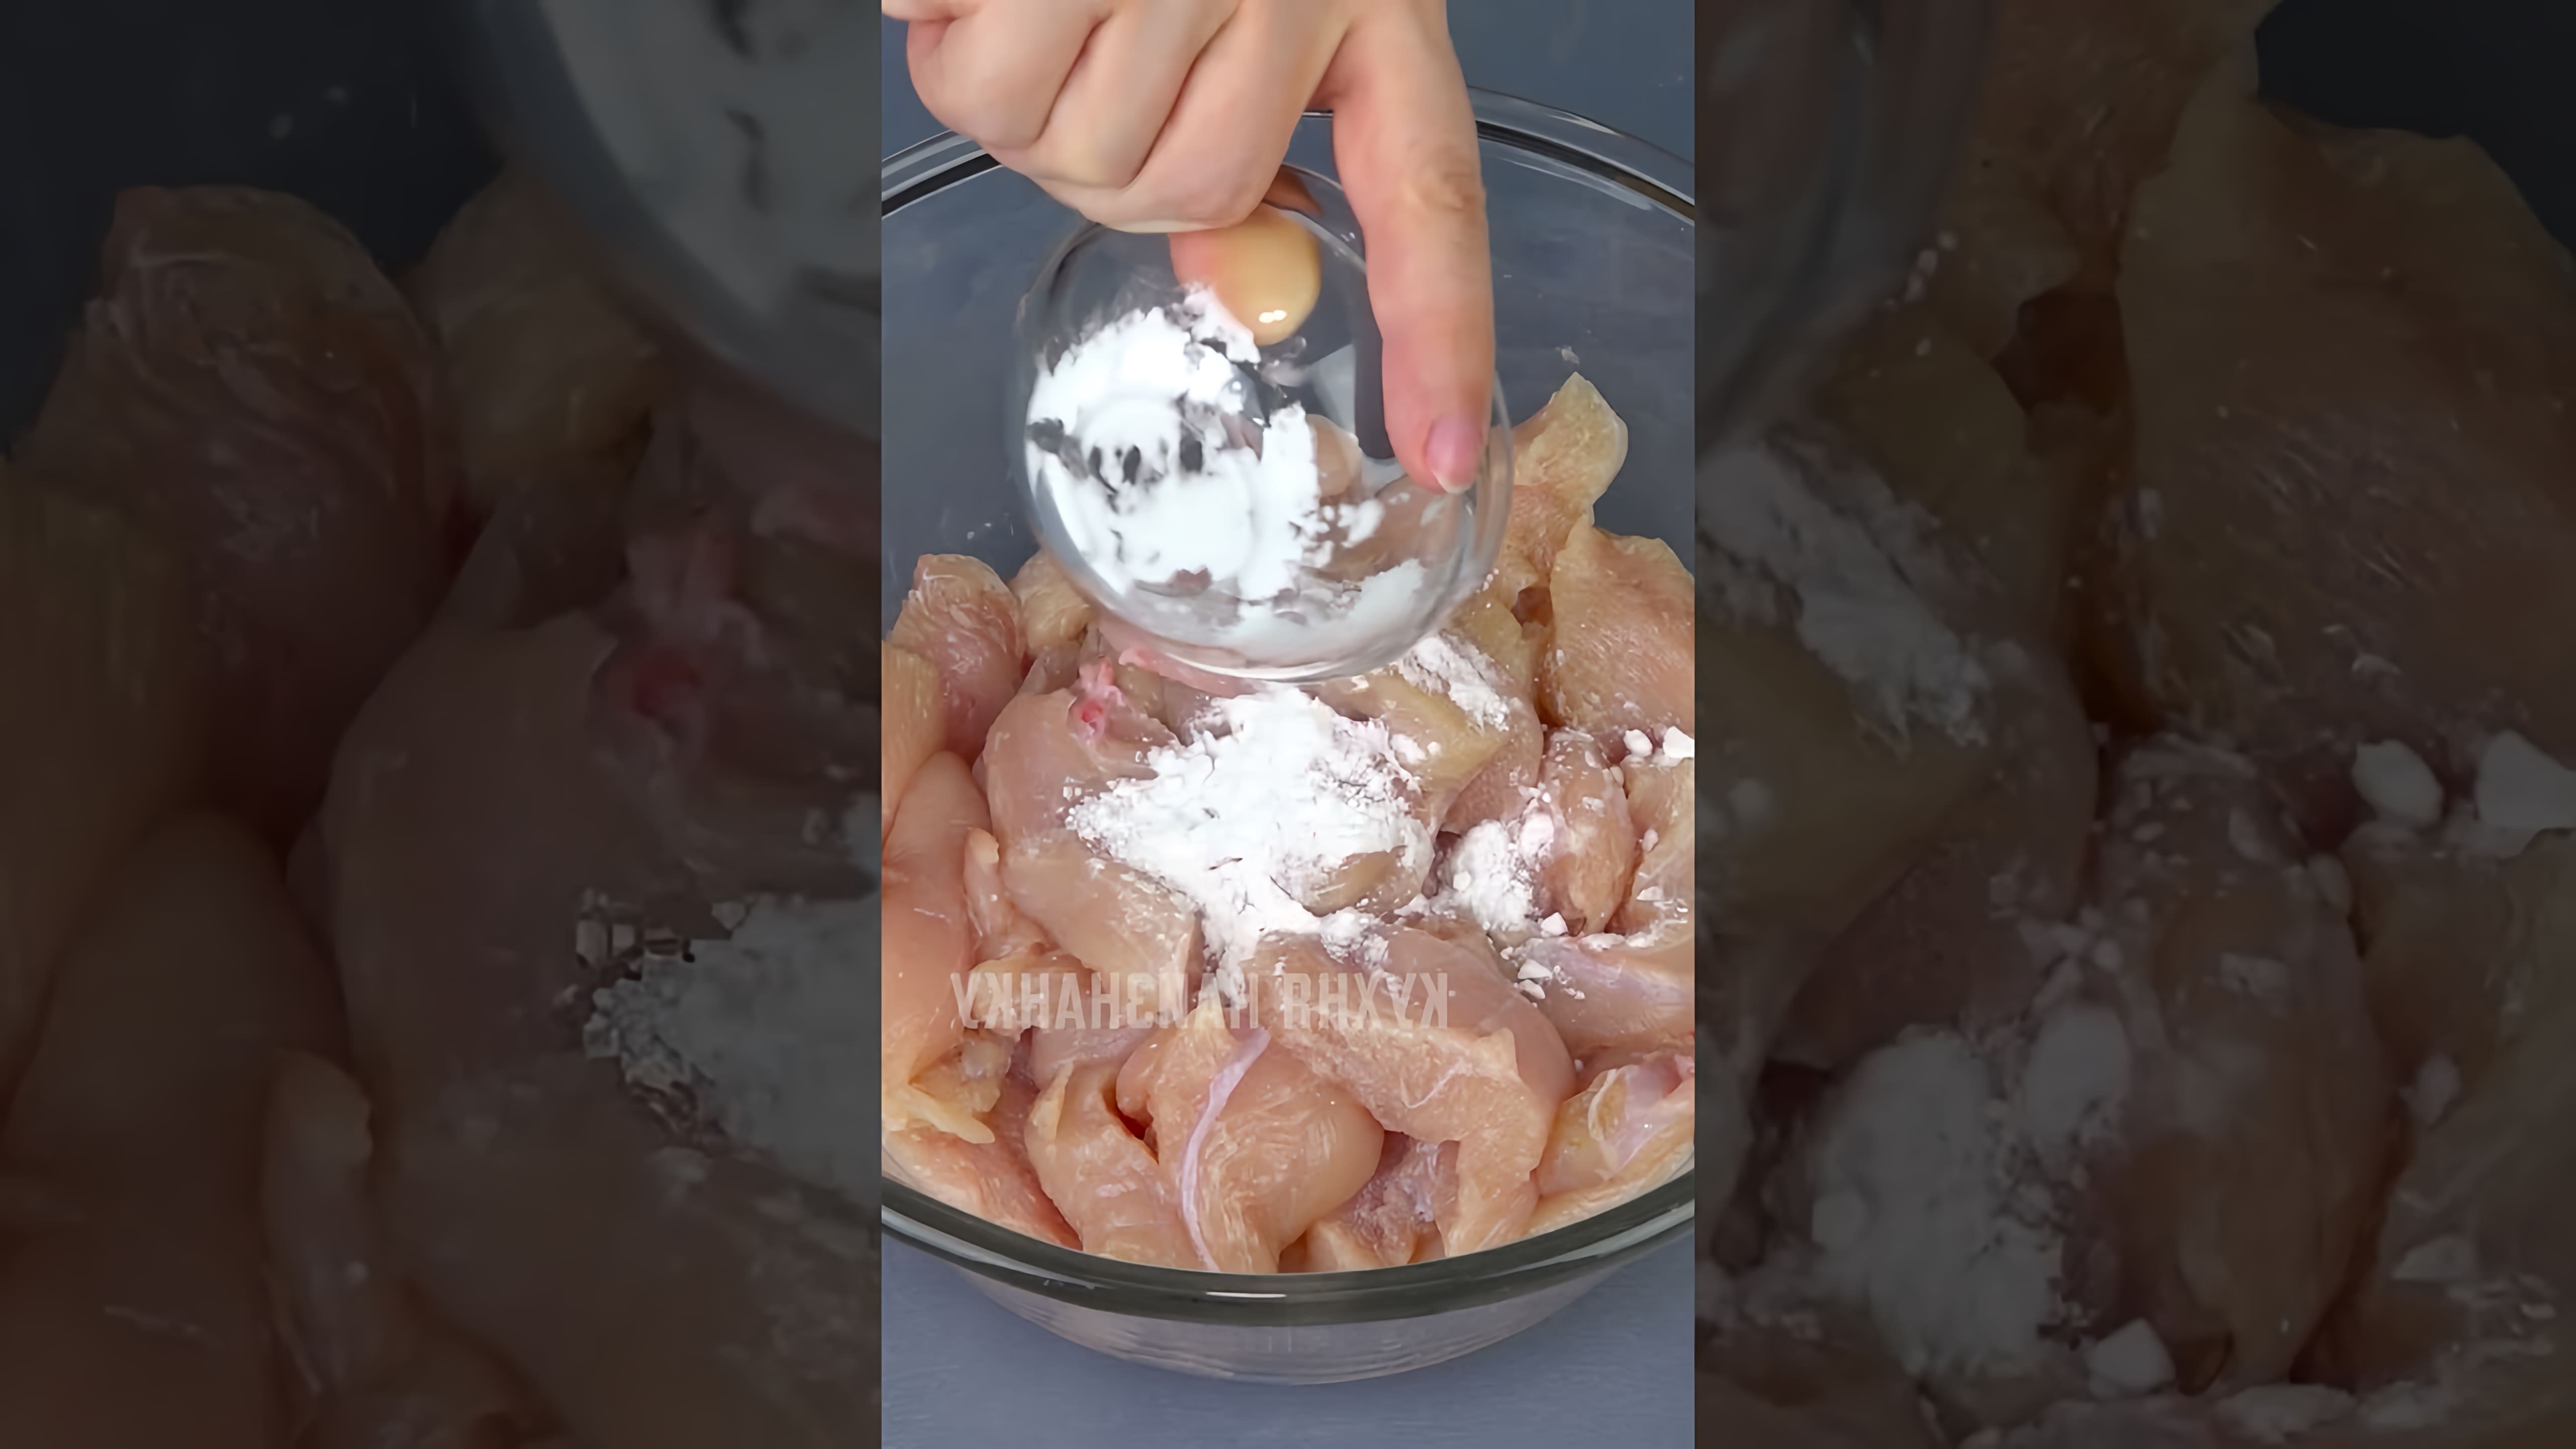 В этом видео демонстрируется процесс приготовления куриного филе, которое по вкусу напоминает свинину